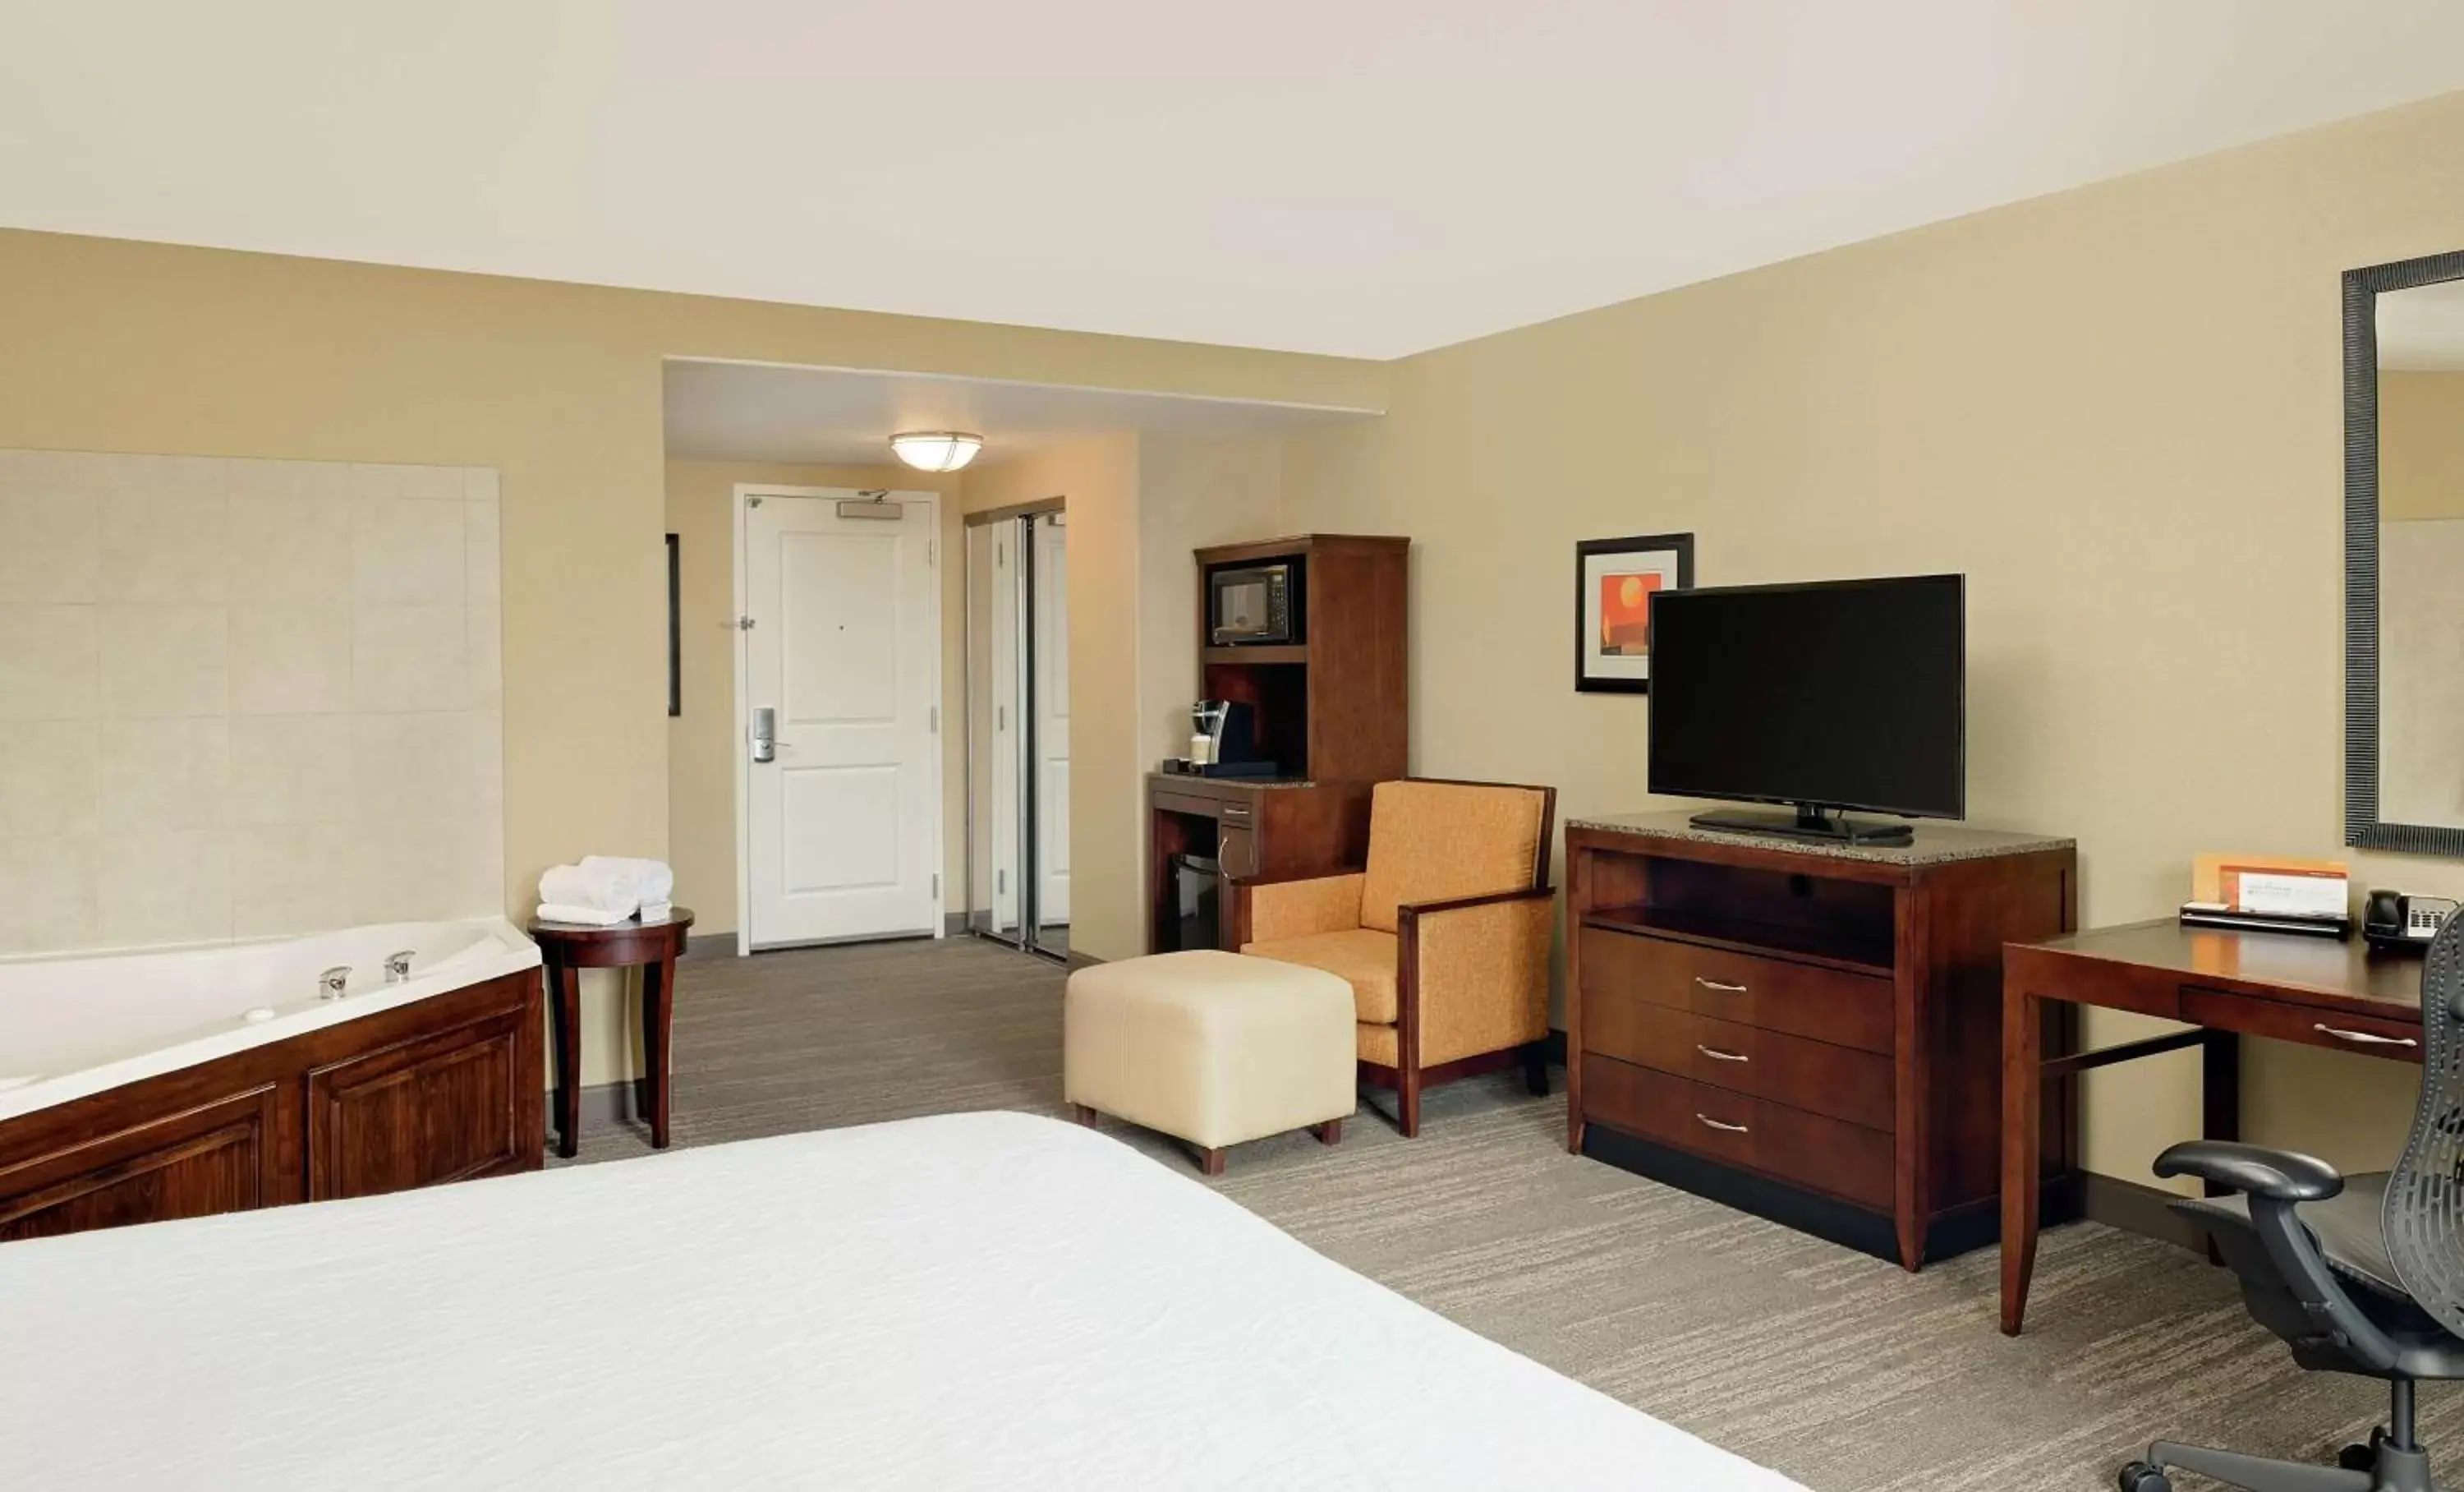 Bedroom, TV/Entertainment Center in Hilton Garden Inn Fontana